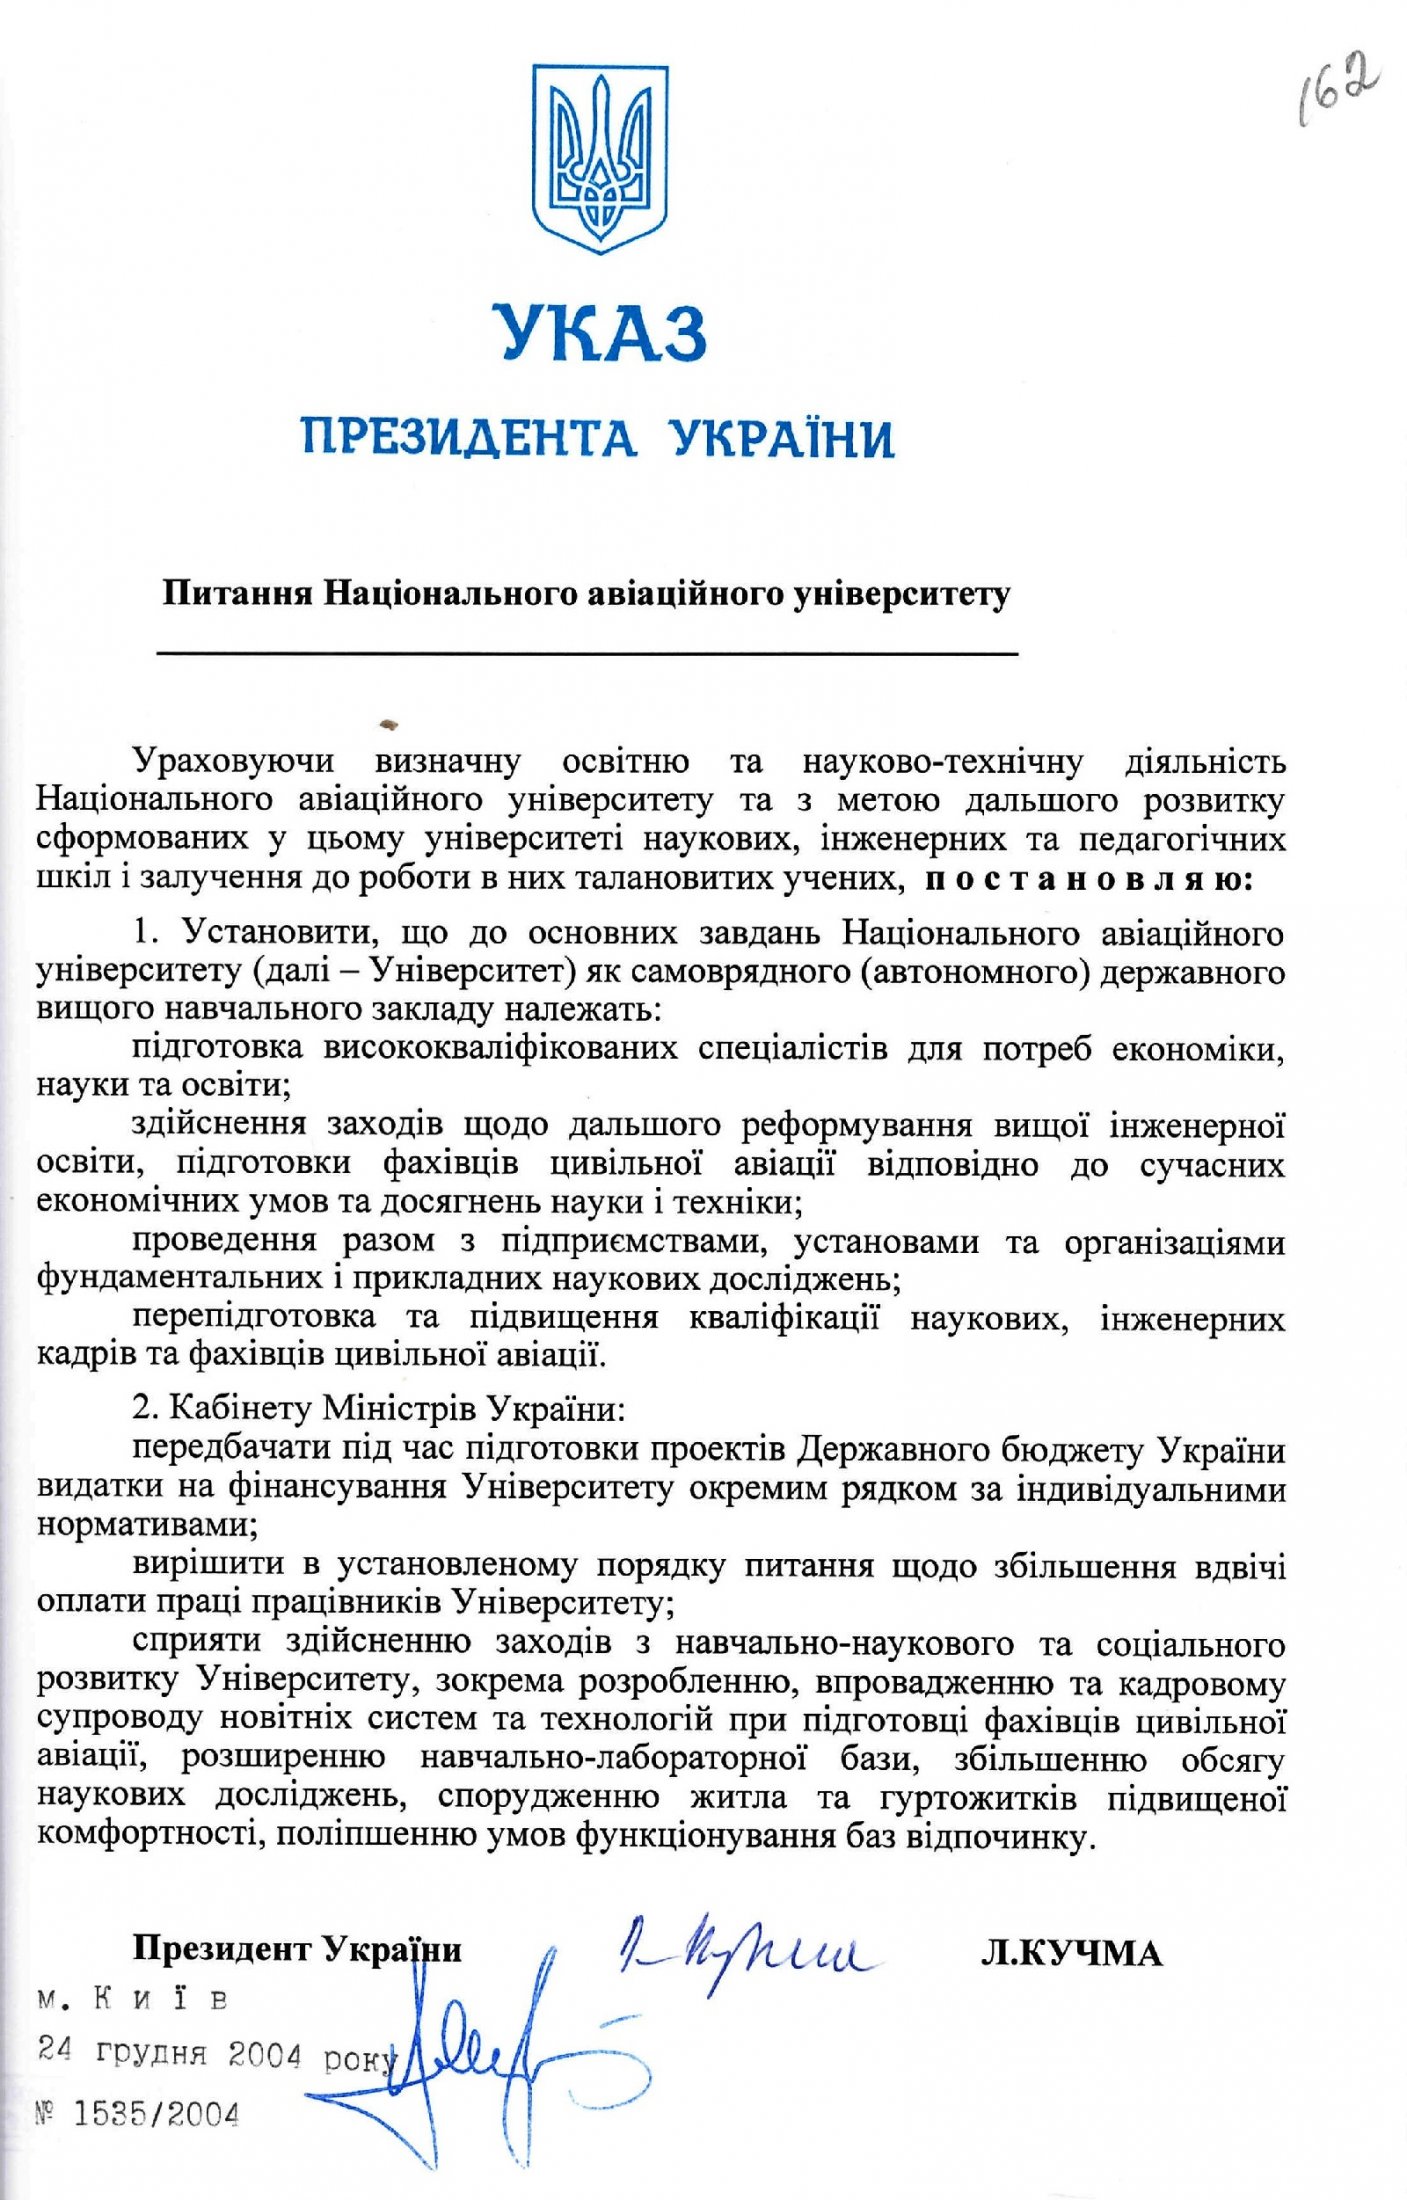 Указ Президента України від 24 грудня 2004 р. № 1535/2004 «Питання Національного авіаційного університету».